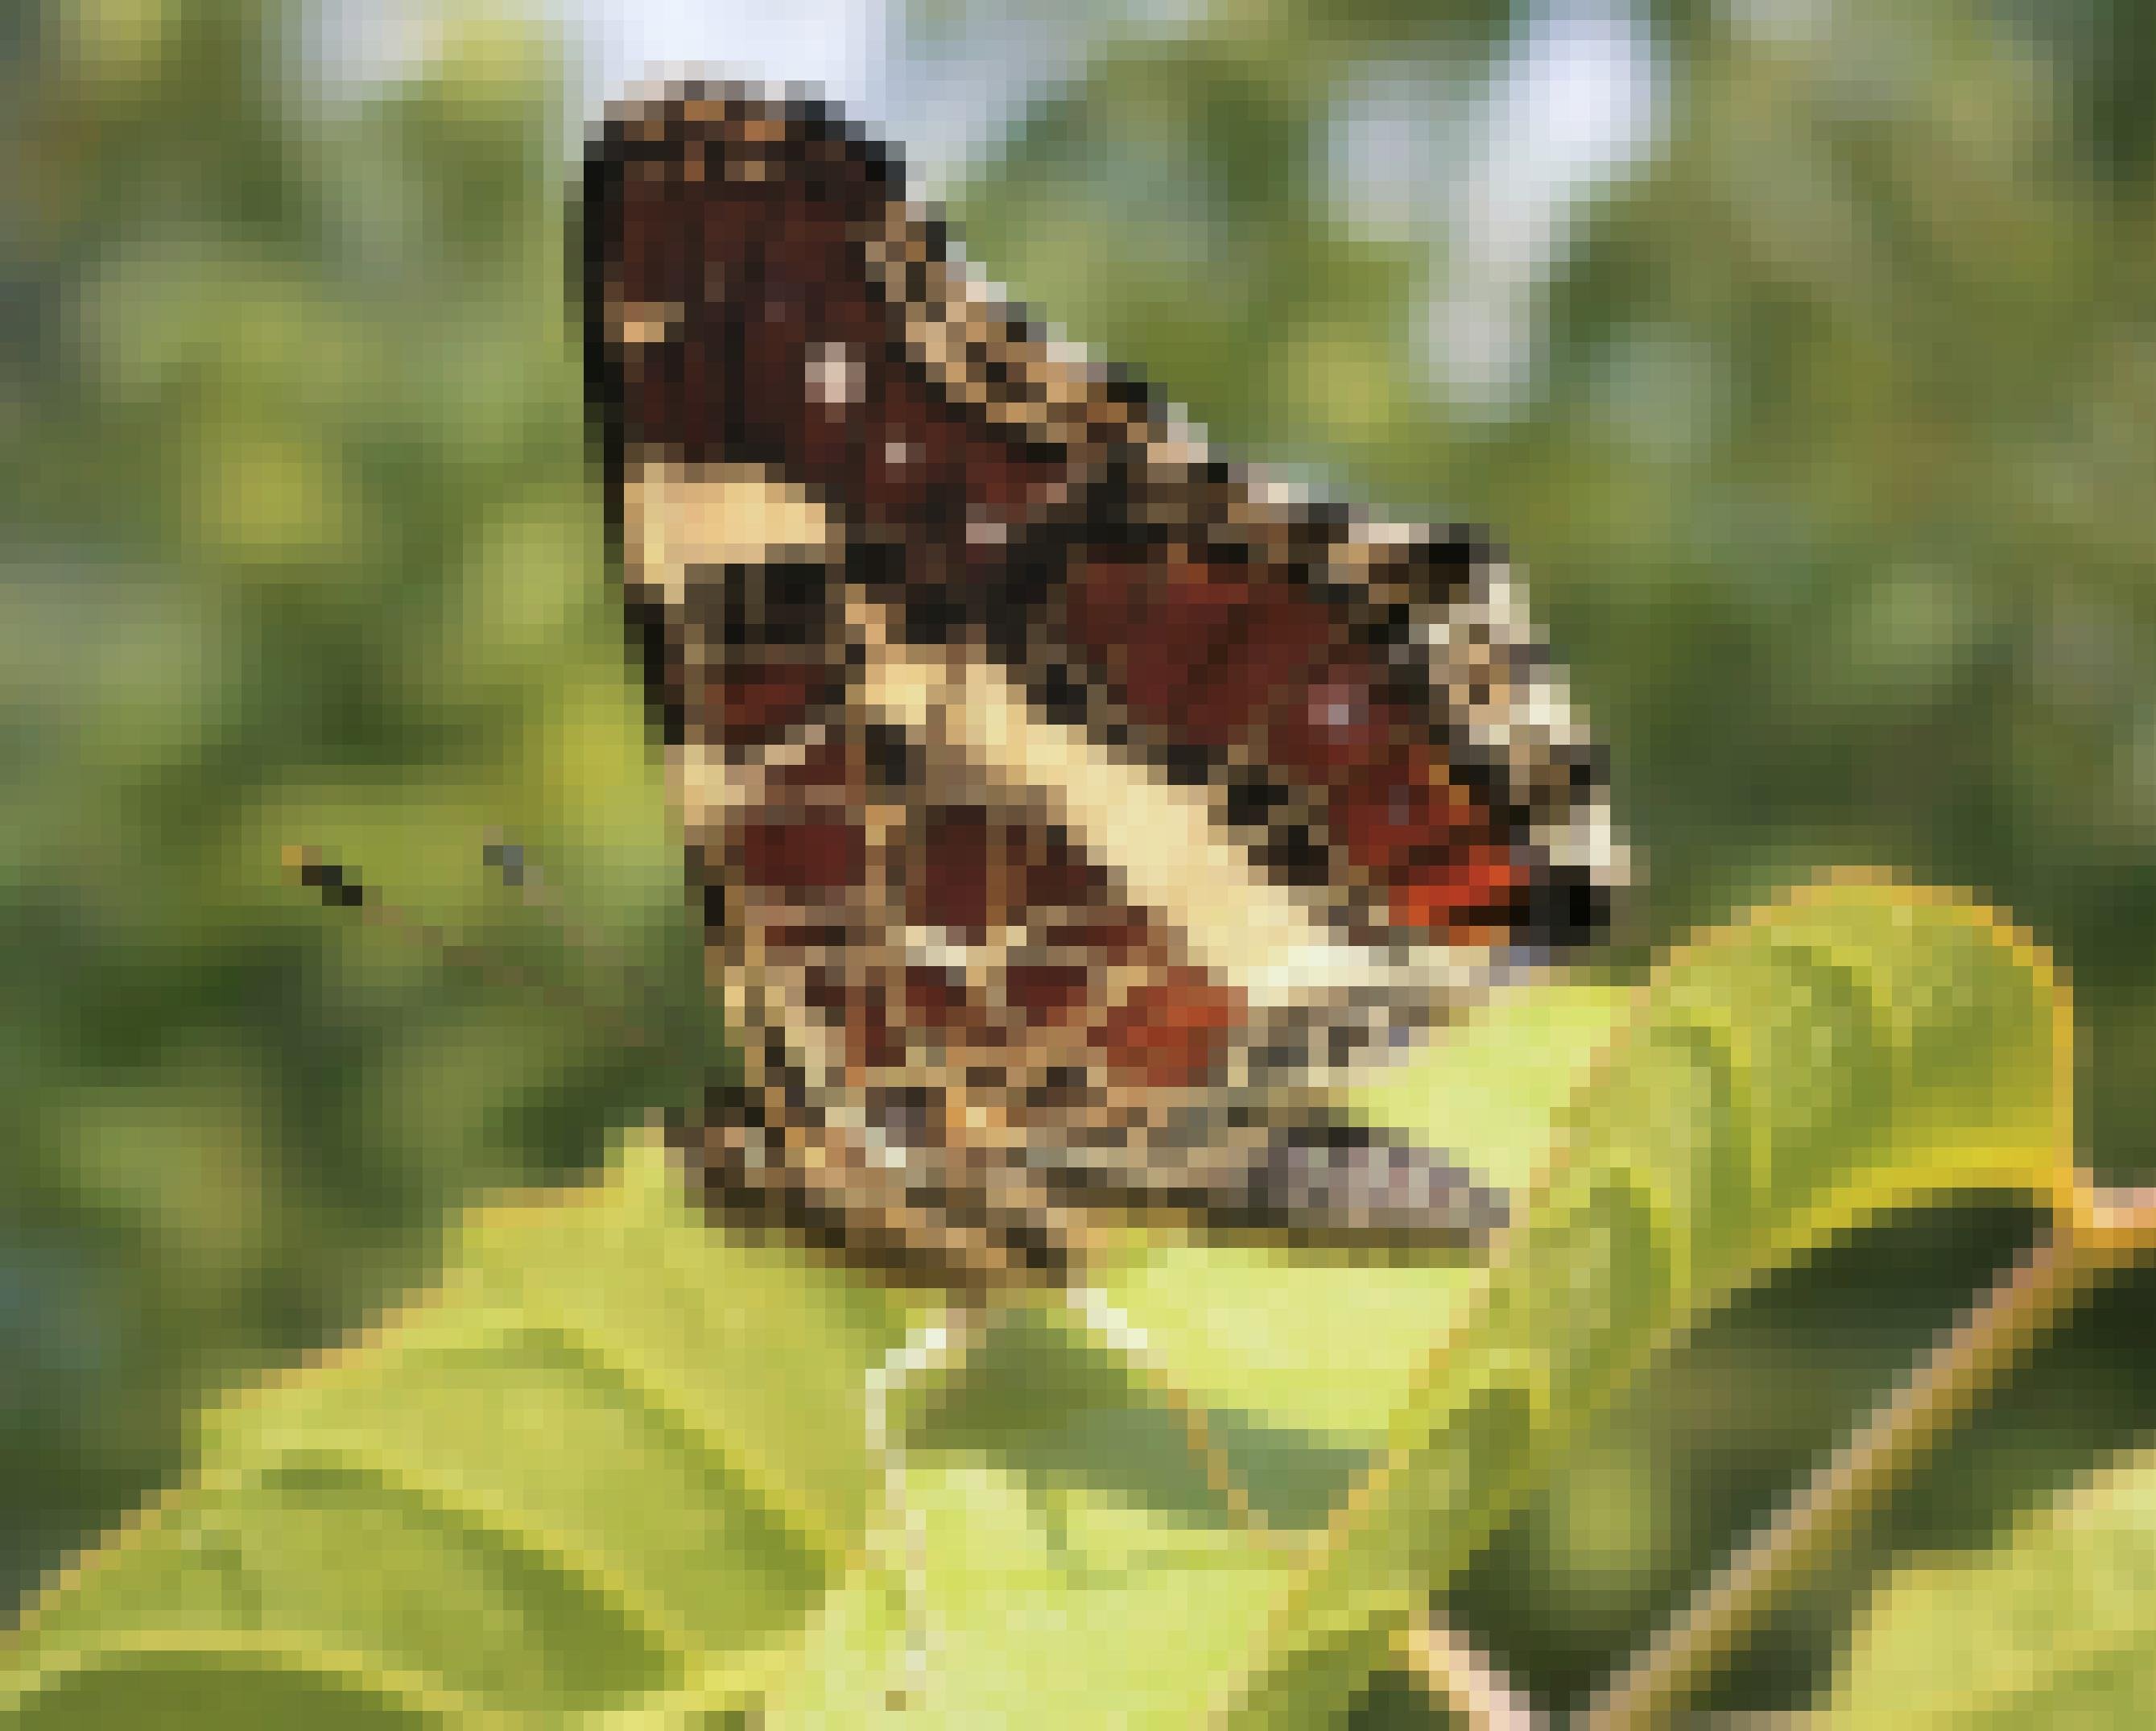 Ein Schmetterling mit zusammengelegten Flügeln auf einem Blatt. Die Flügelunterseite ist braunschwarz mit hellen Linien und Adern.